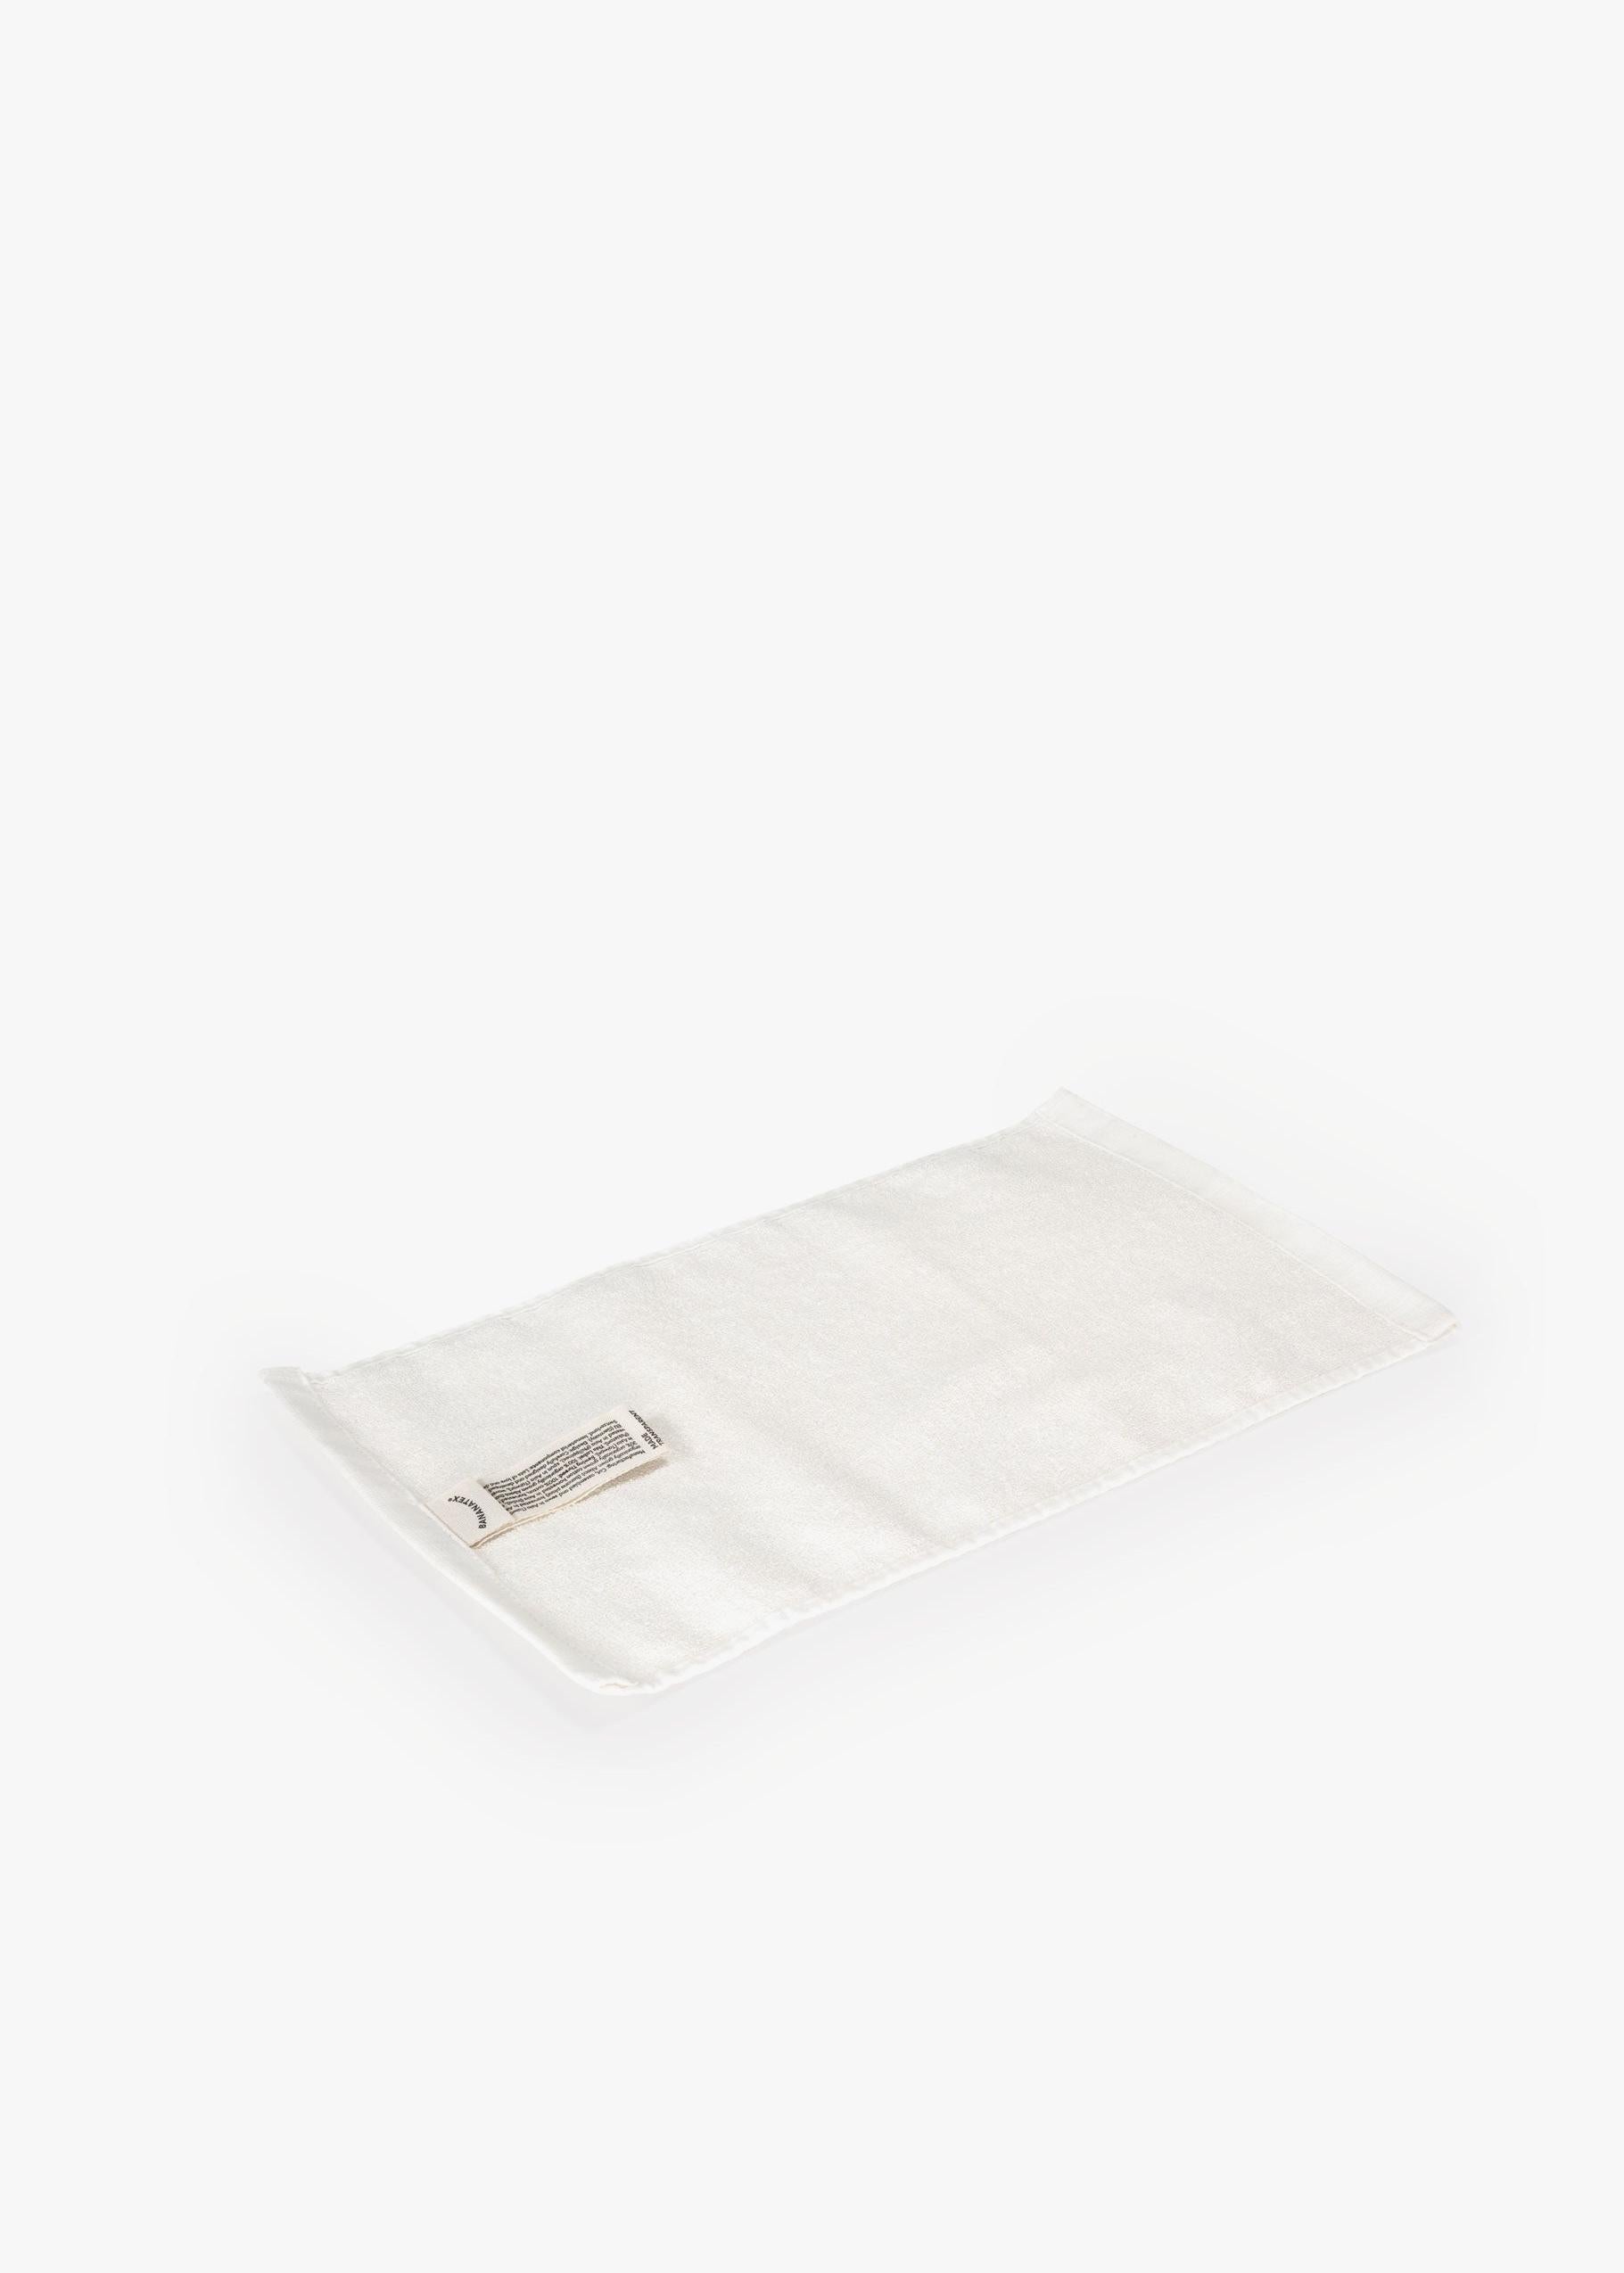 Bananatex Scrub Towel – Care